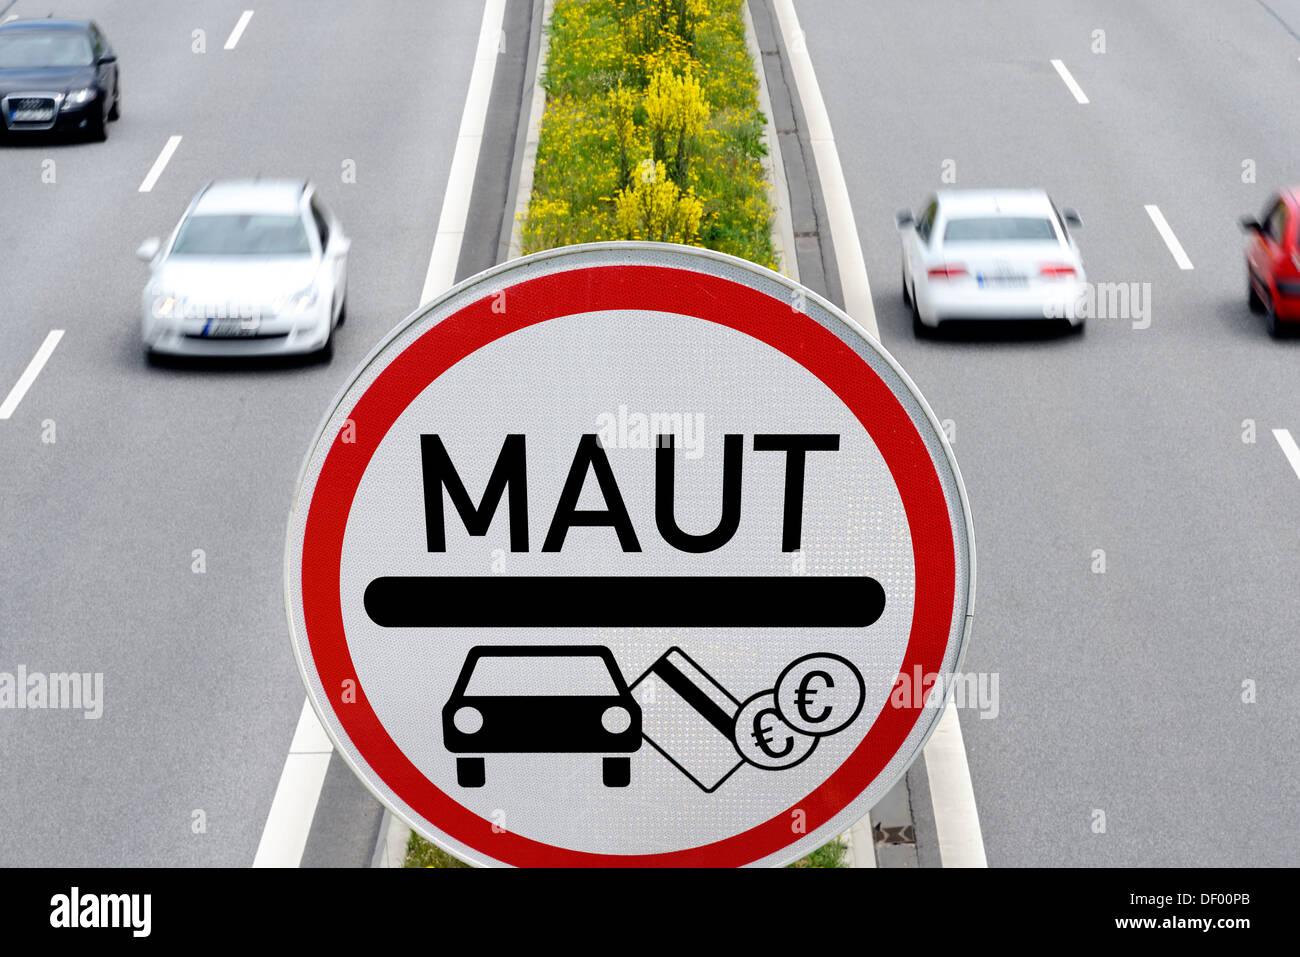 La autopista con peaje de turismos signo, fotomontaje, Autobahn mit PKW-Maut-Schild, Fotomontage Foto de stock